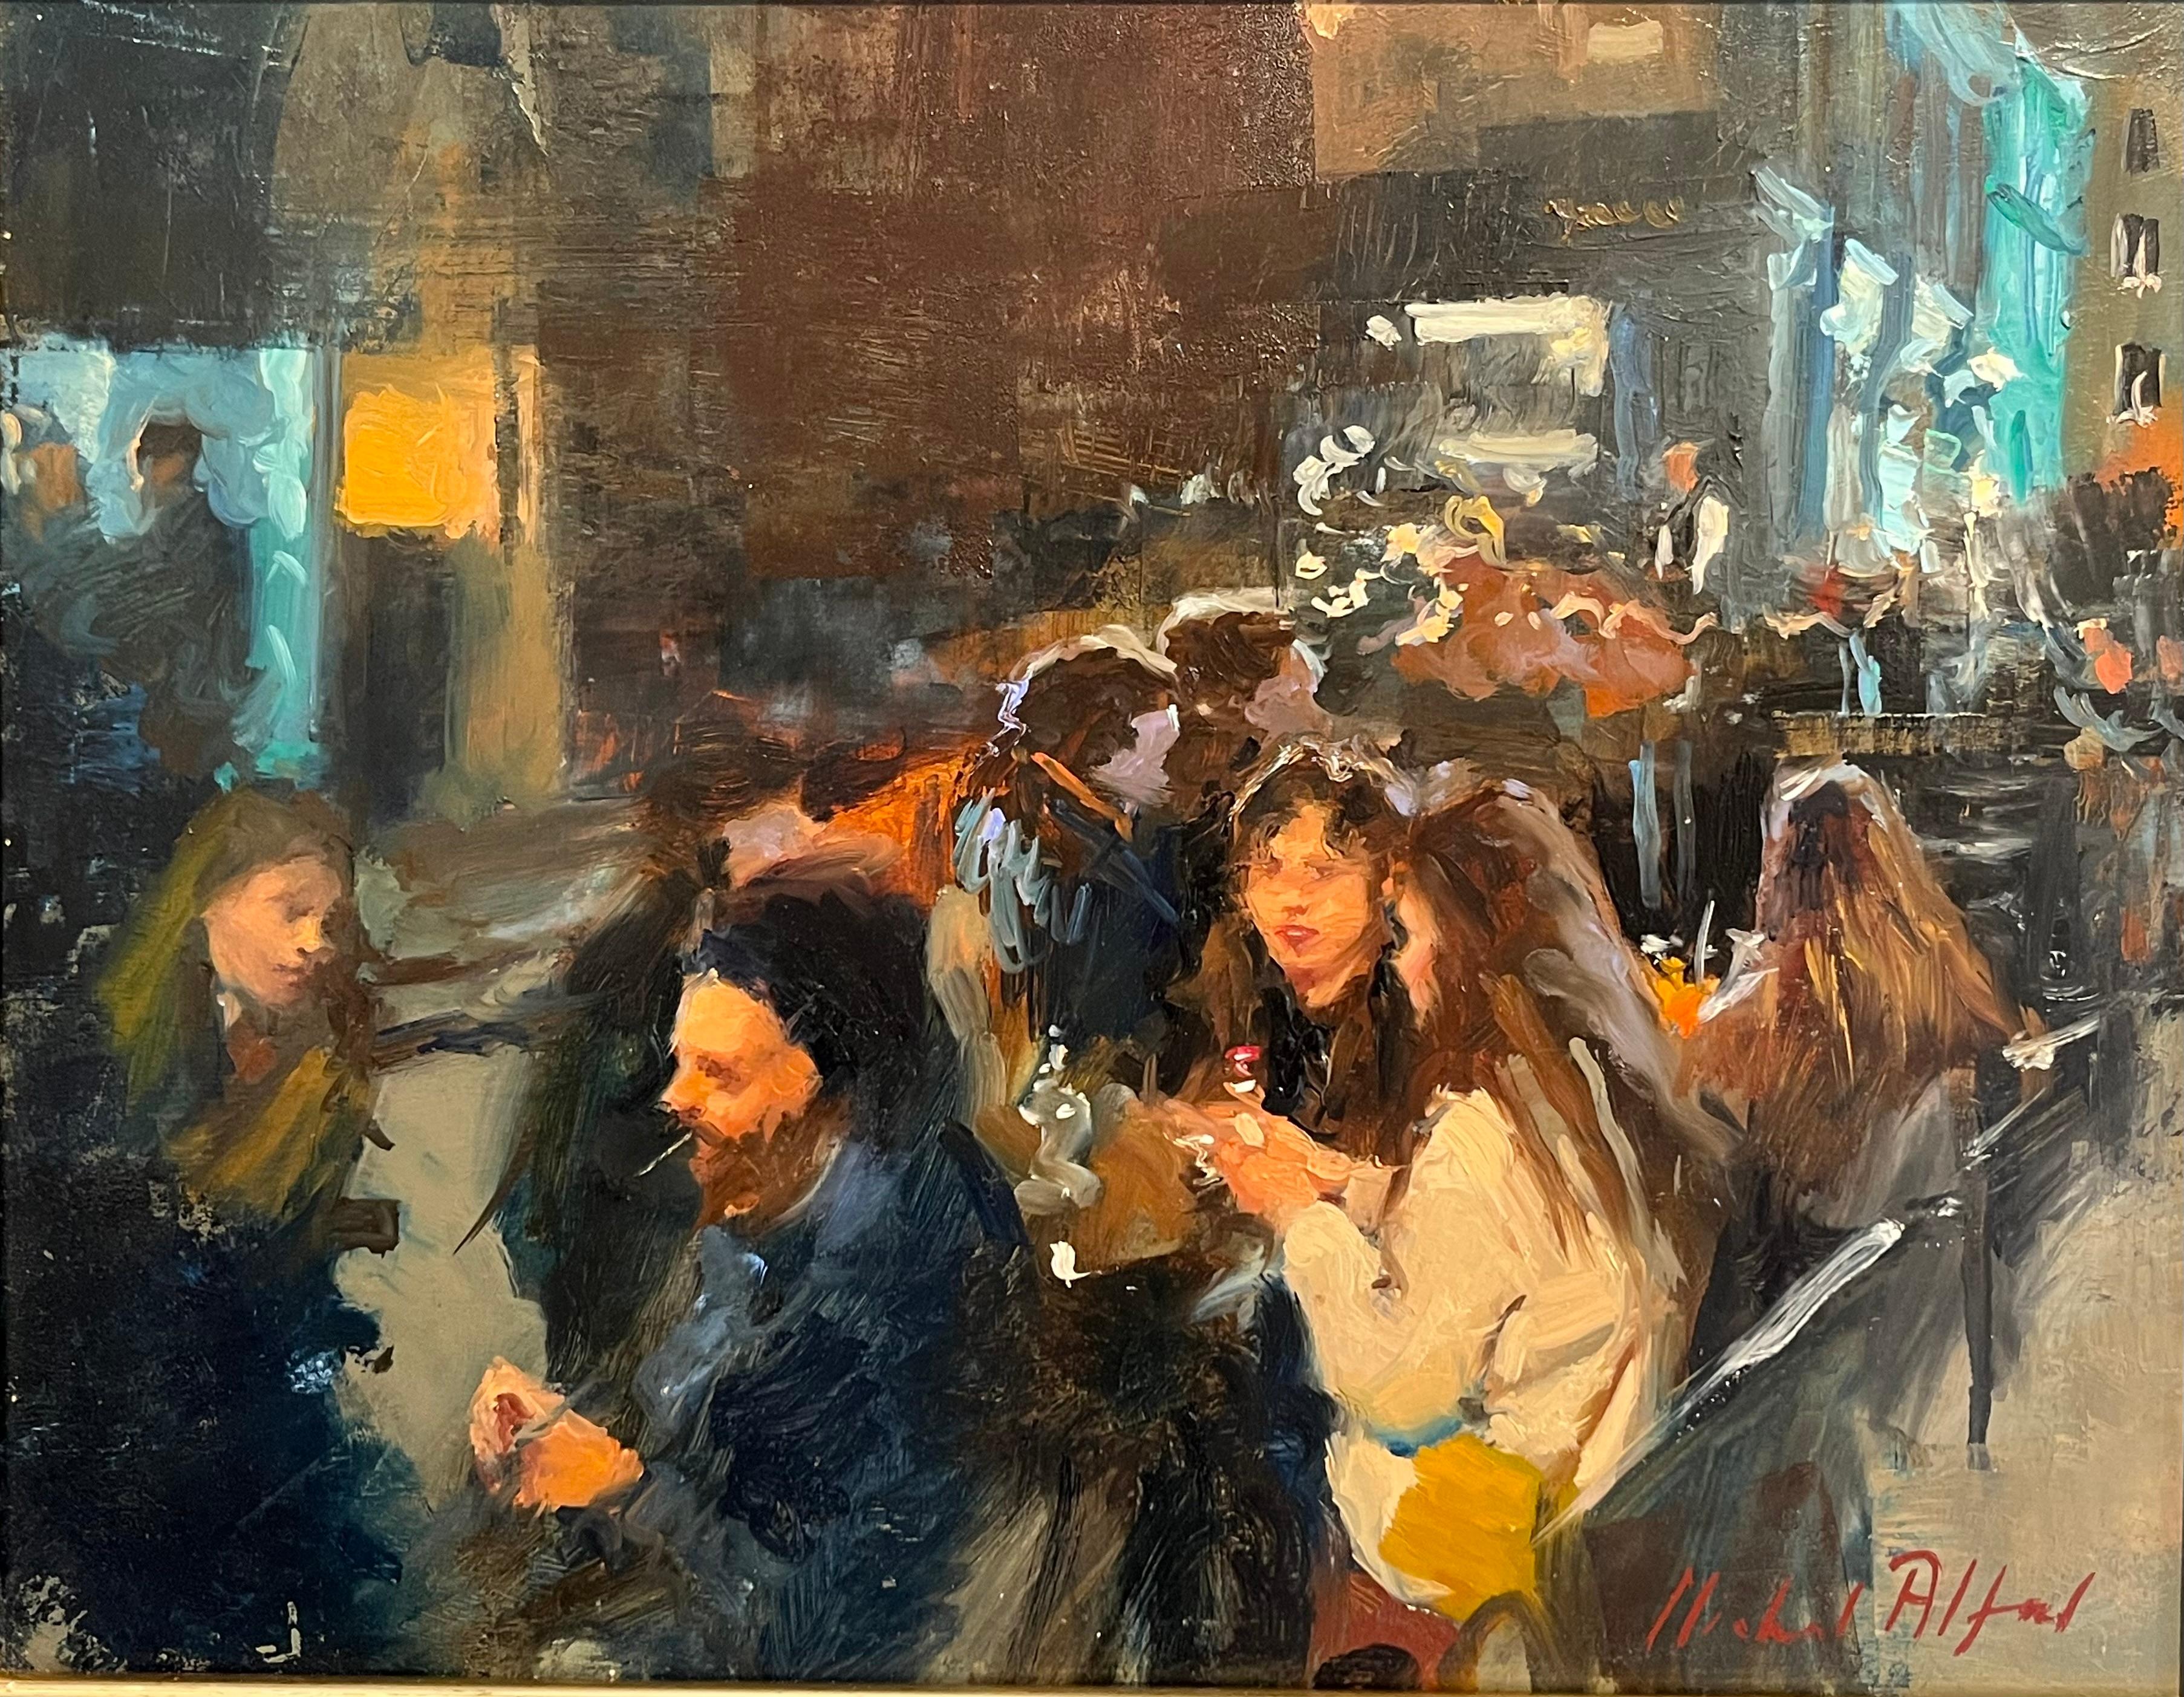 Portrait Painting Michael Alford - Outside Dining, West End-original impressionnisme - peinture figurative de paysage urbain 